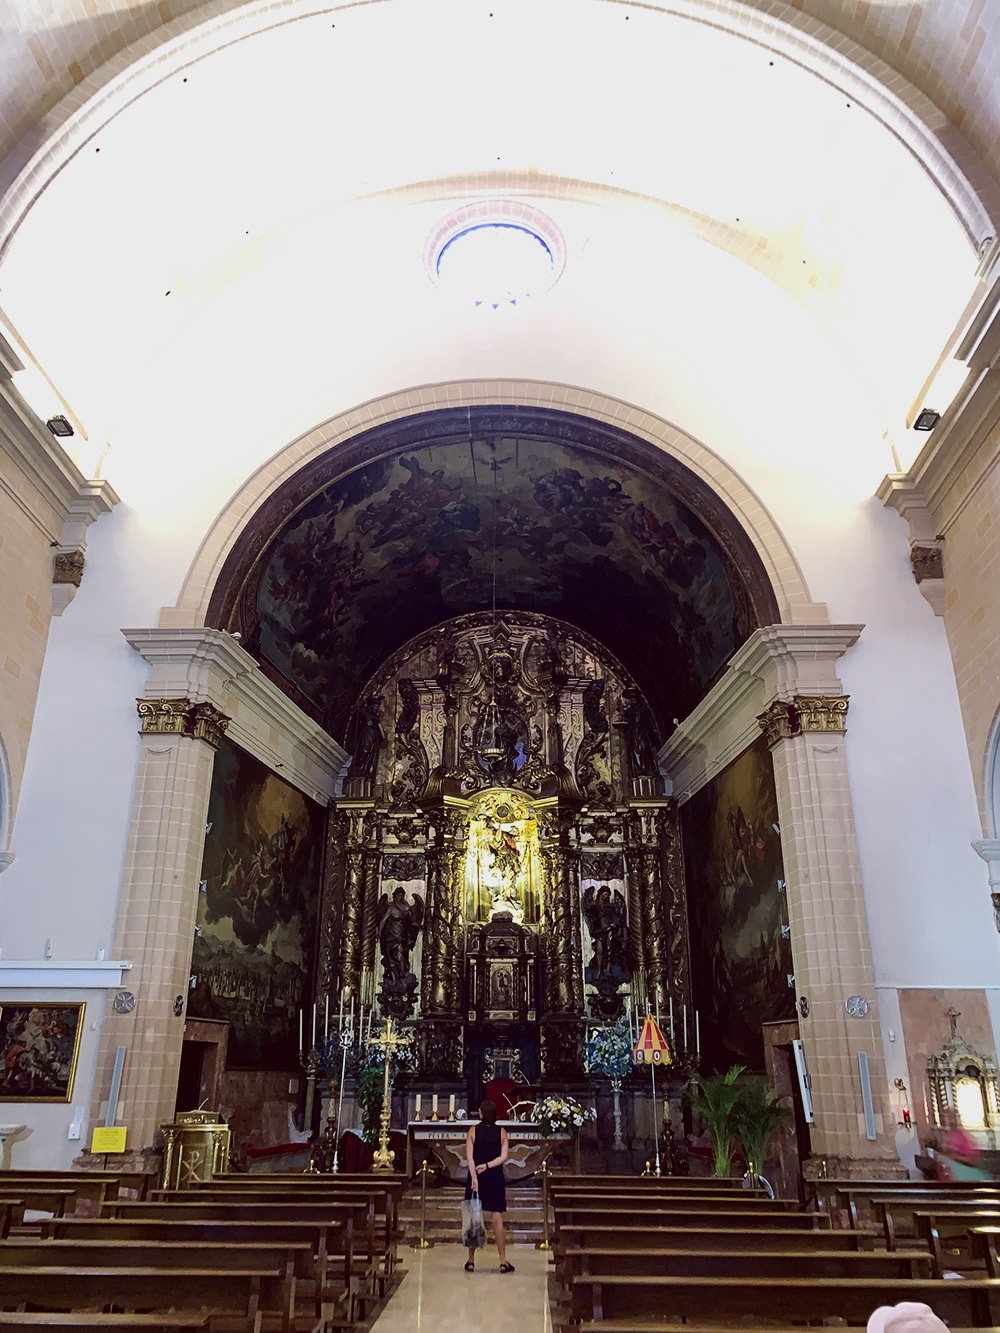 Многие церкви на Мальорке бесплатные для посещения. В эту зашли потому, что она названа в честь моего тезки — святого Николая